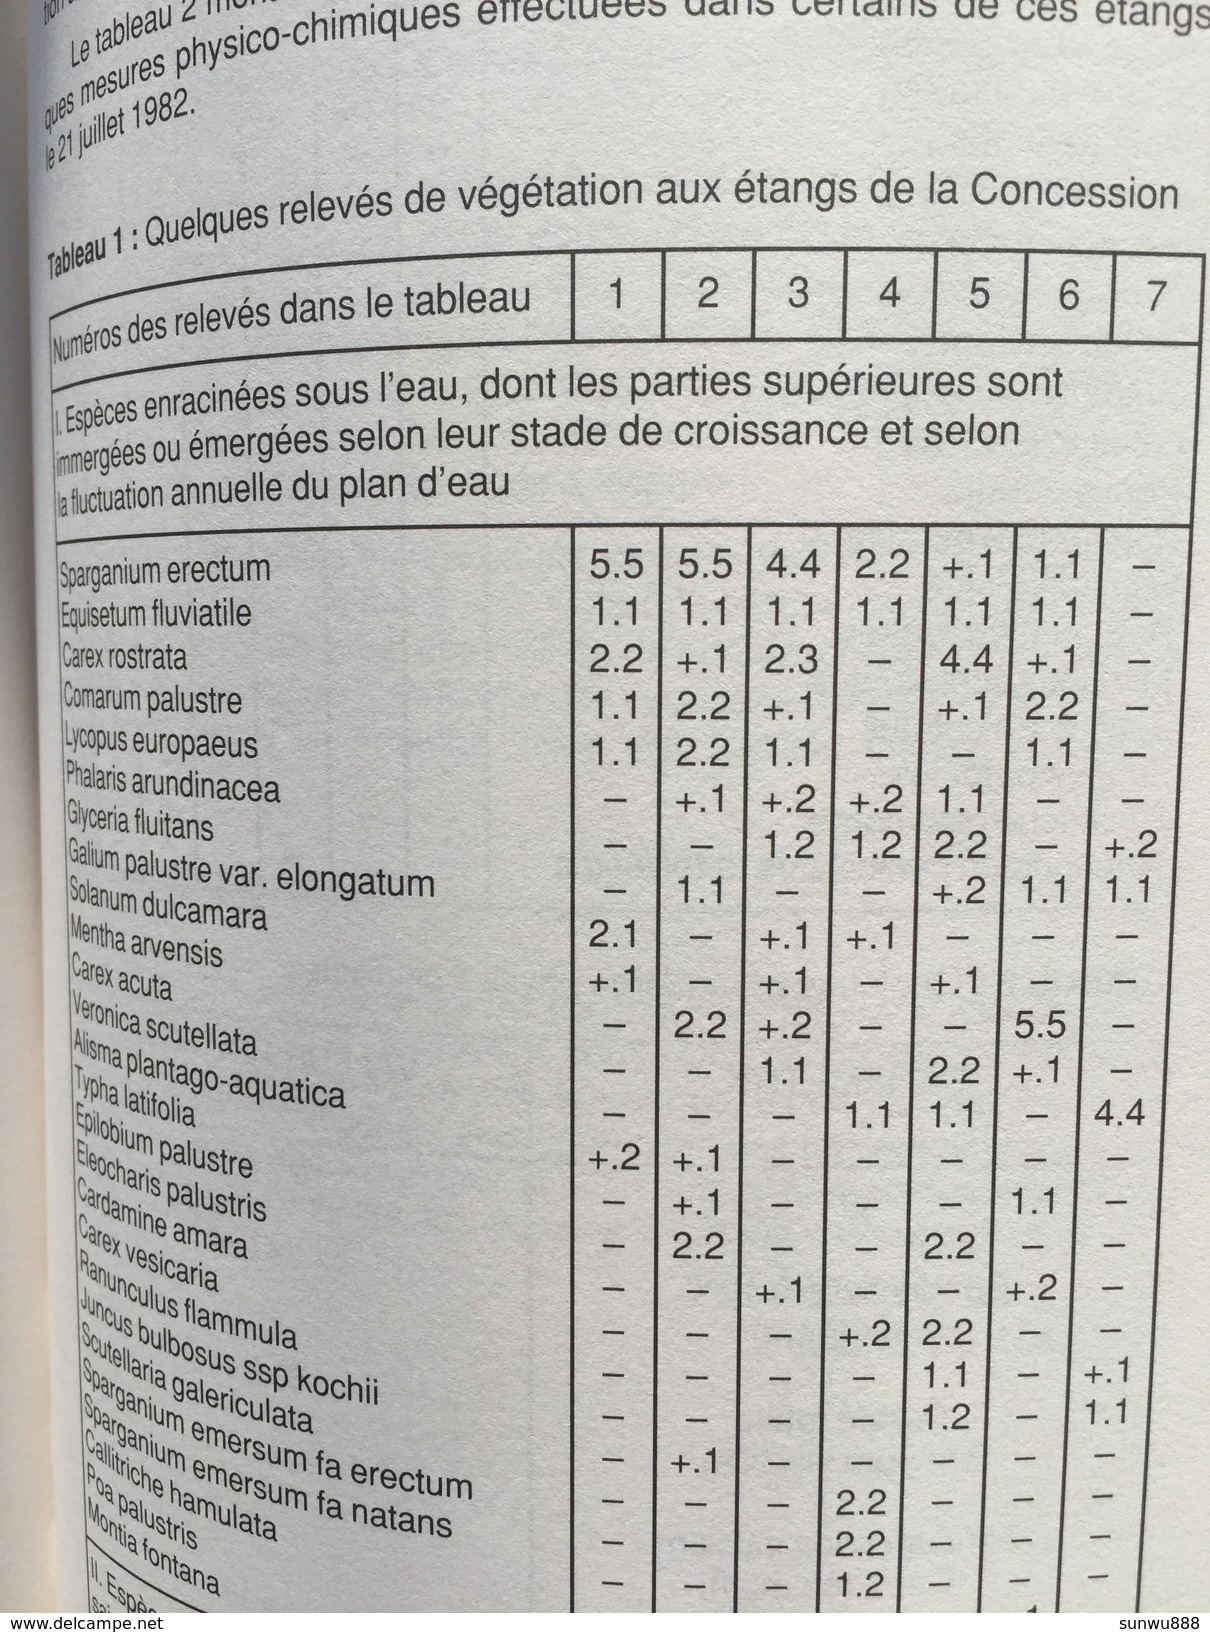 Glain et Salm - Terre de Salm (Revue 39 1993, 272 pages) (ardoise, chemins de fer, conditions de travail ardoisière, ...